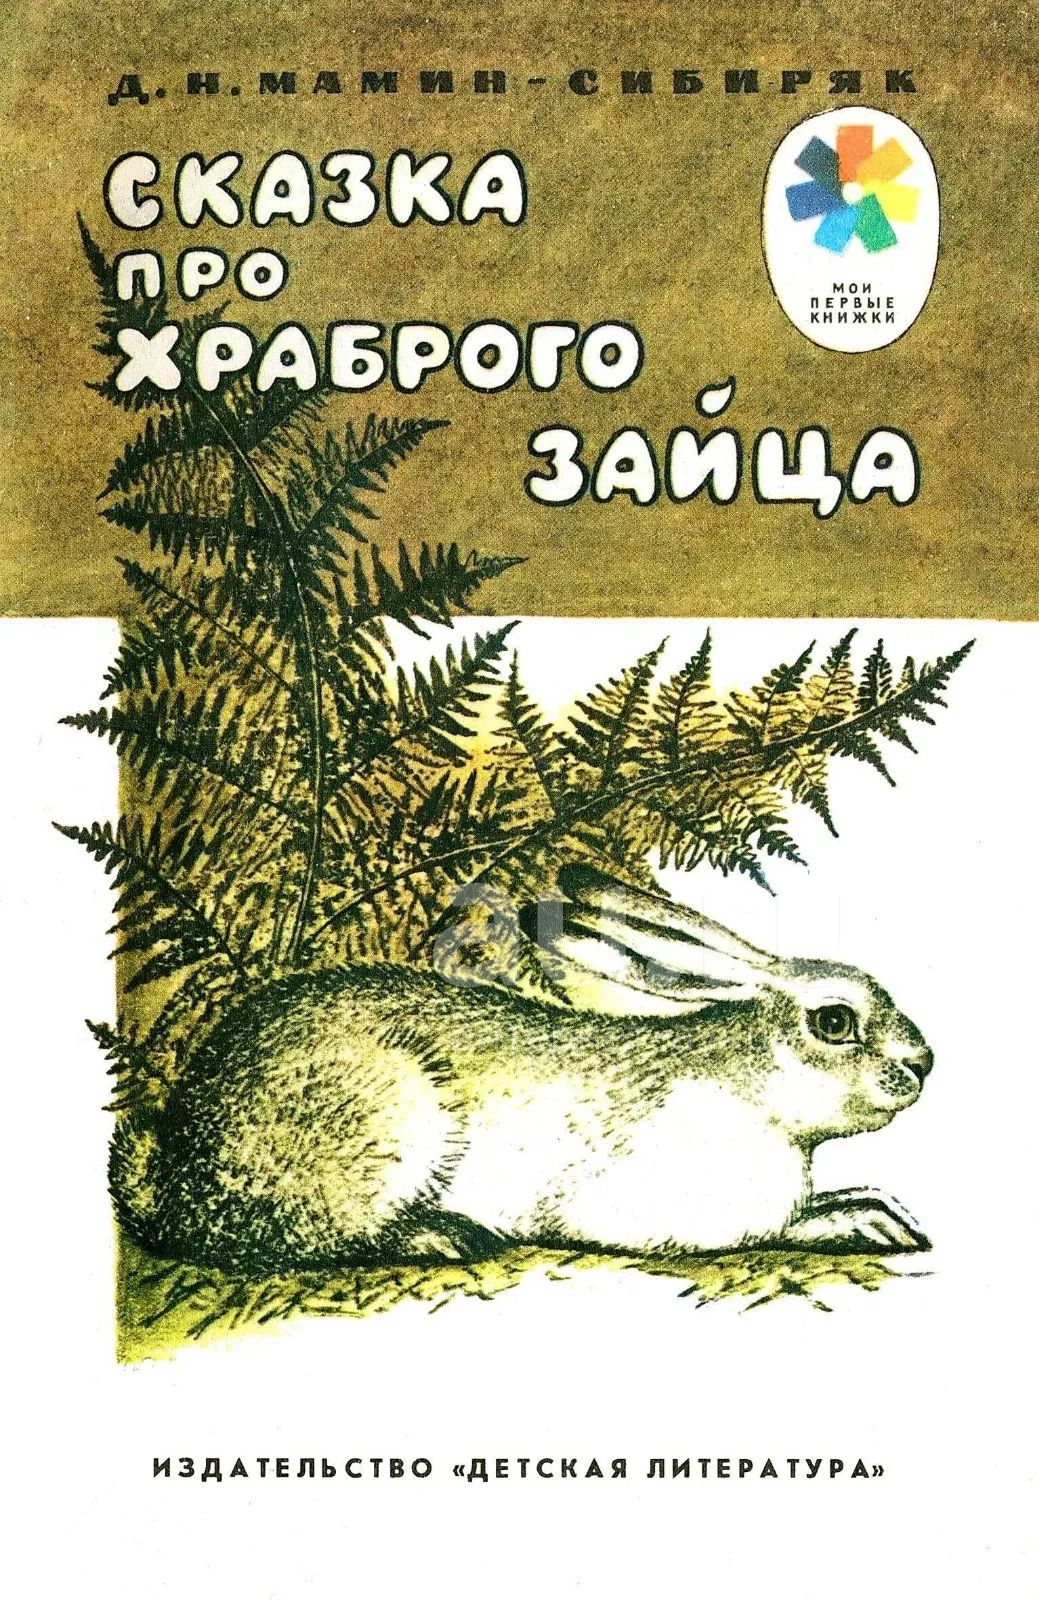 Книга про зайца. Сказка про зайца мамин Сибиряк. Д.Н. мамин-Сибиряк «сказка про храброго зайца» книга. Книга про зайца Мамина Сибиряка.